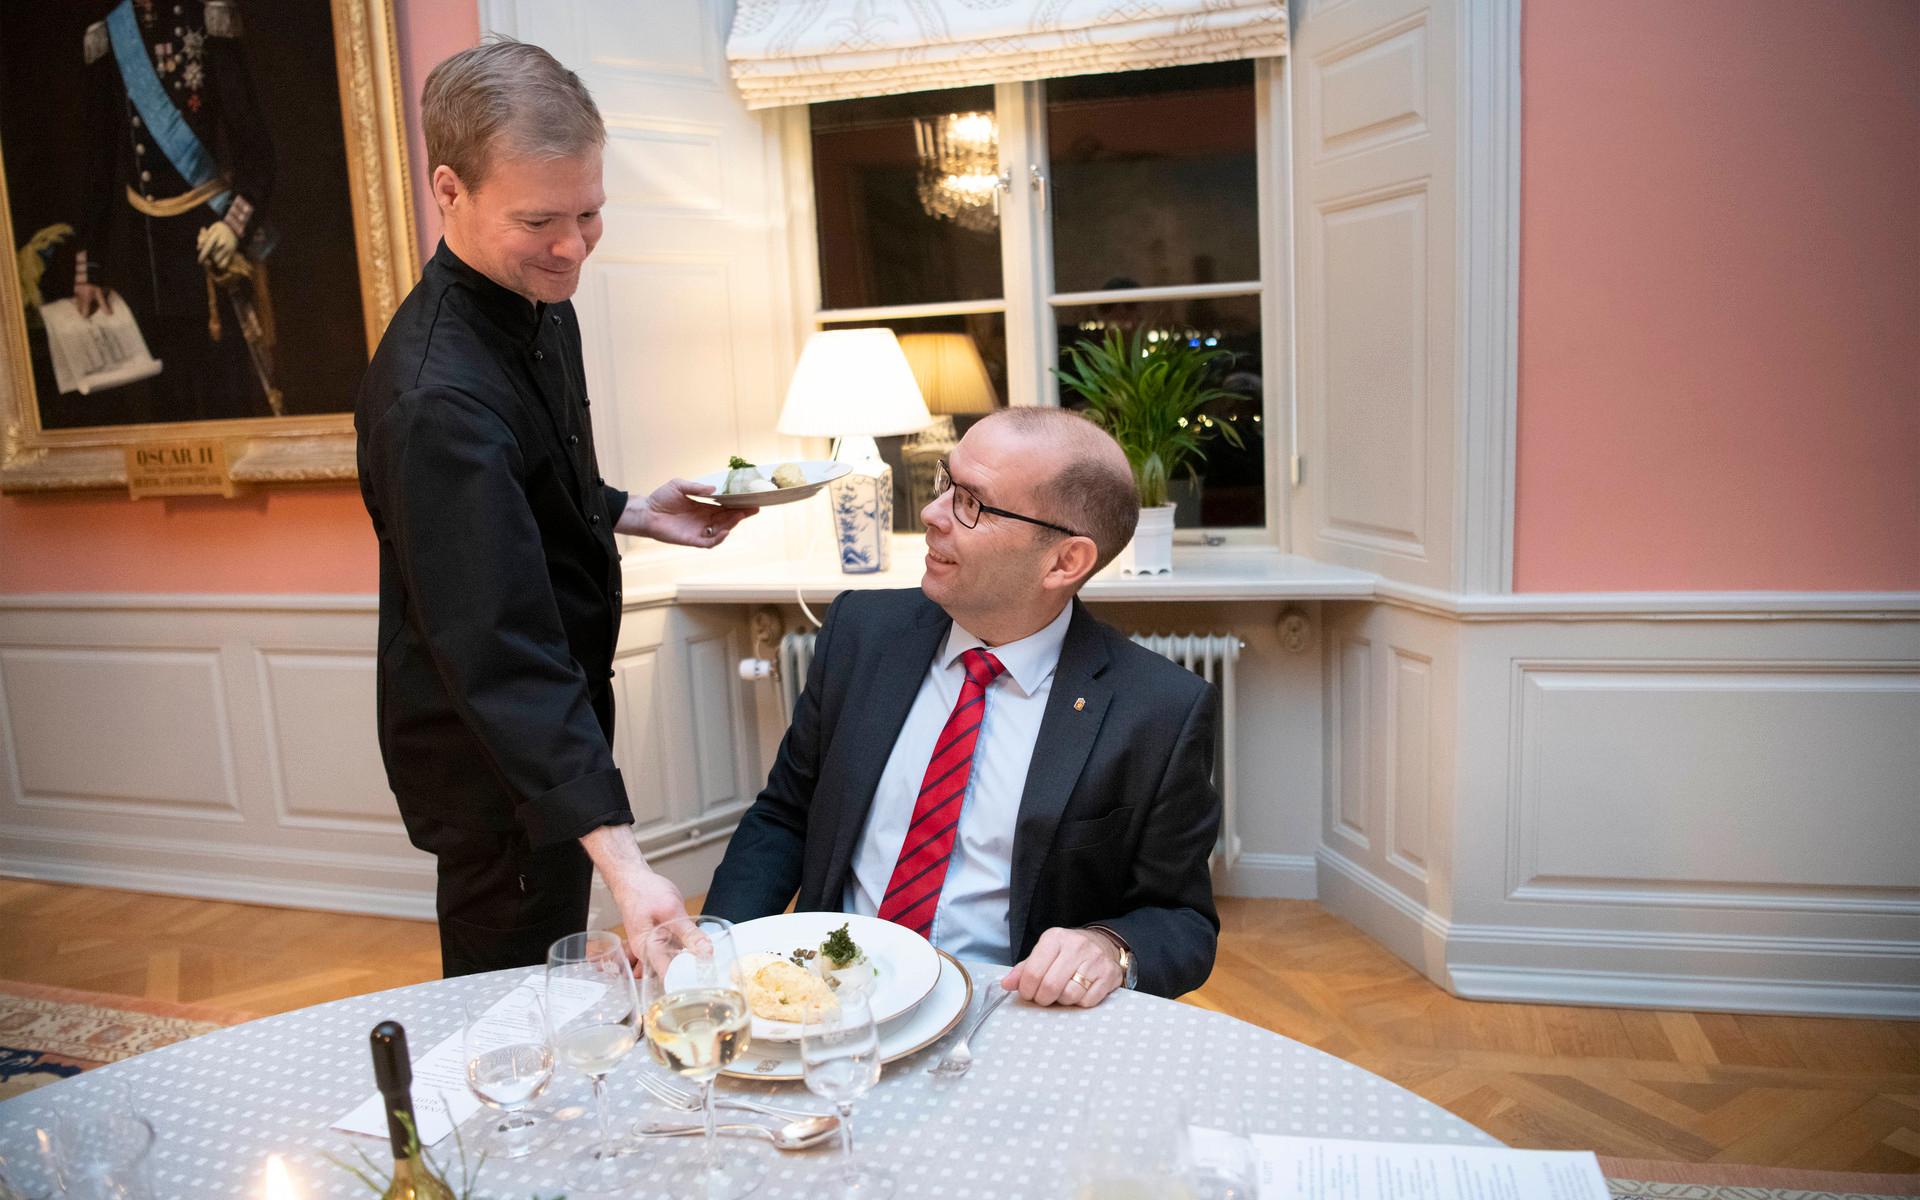 Husföreståndare Daniel Blomqvist lagar maten och serverar vid högtidliga tillfällen.